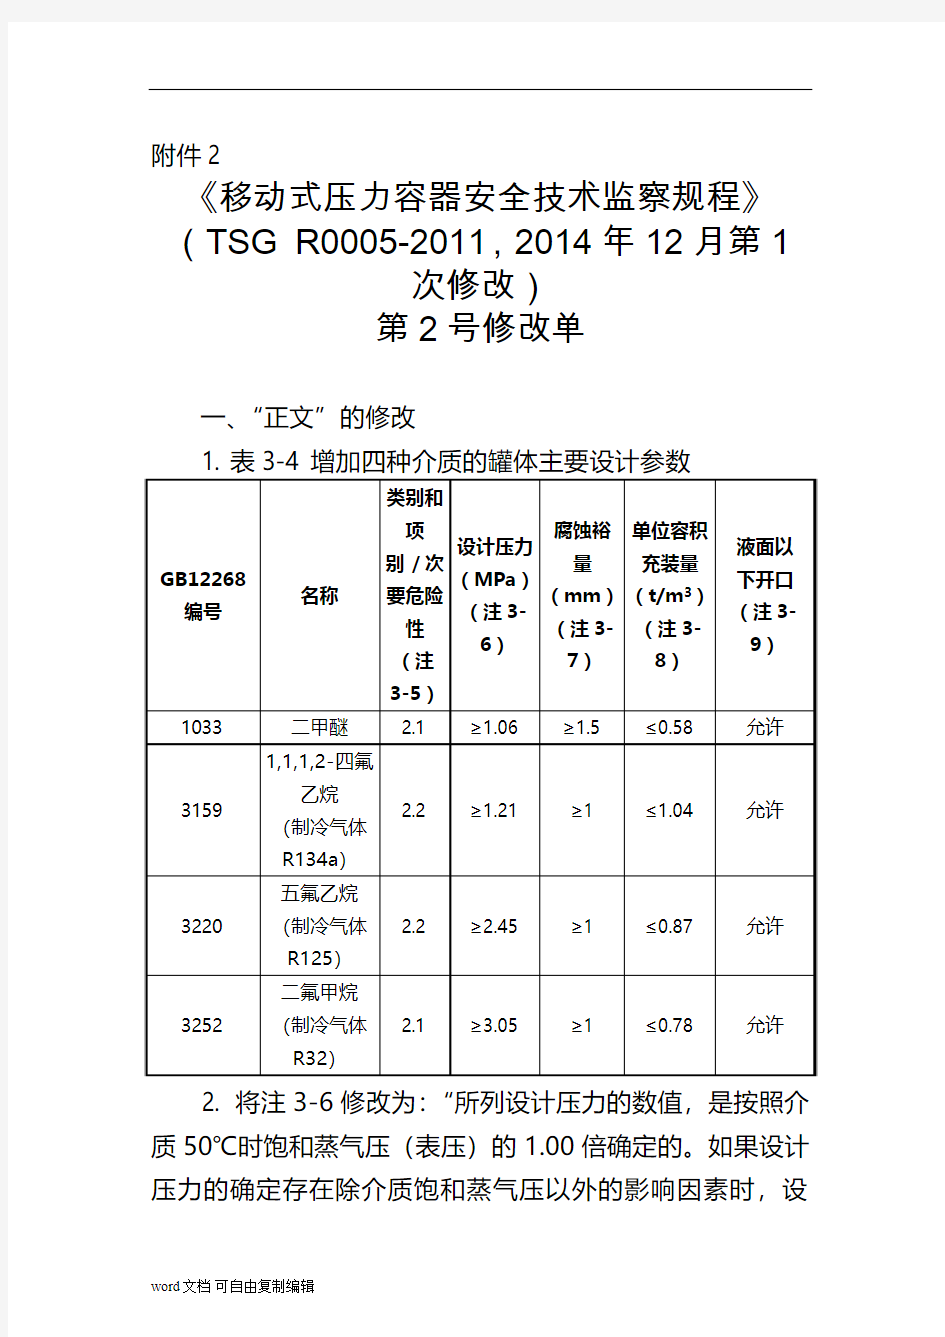 《移动式压力容器安全技术监察规程》(TSG-R0005-2011-2014年12月第1次修改)第2号修改单